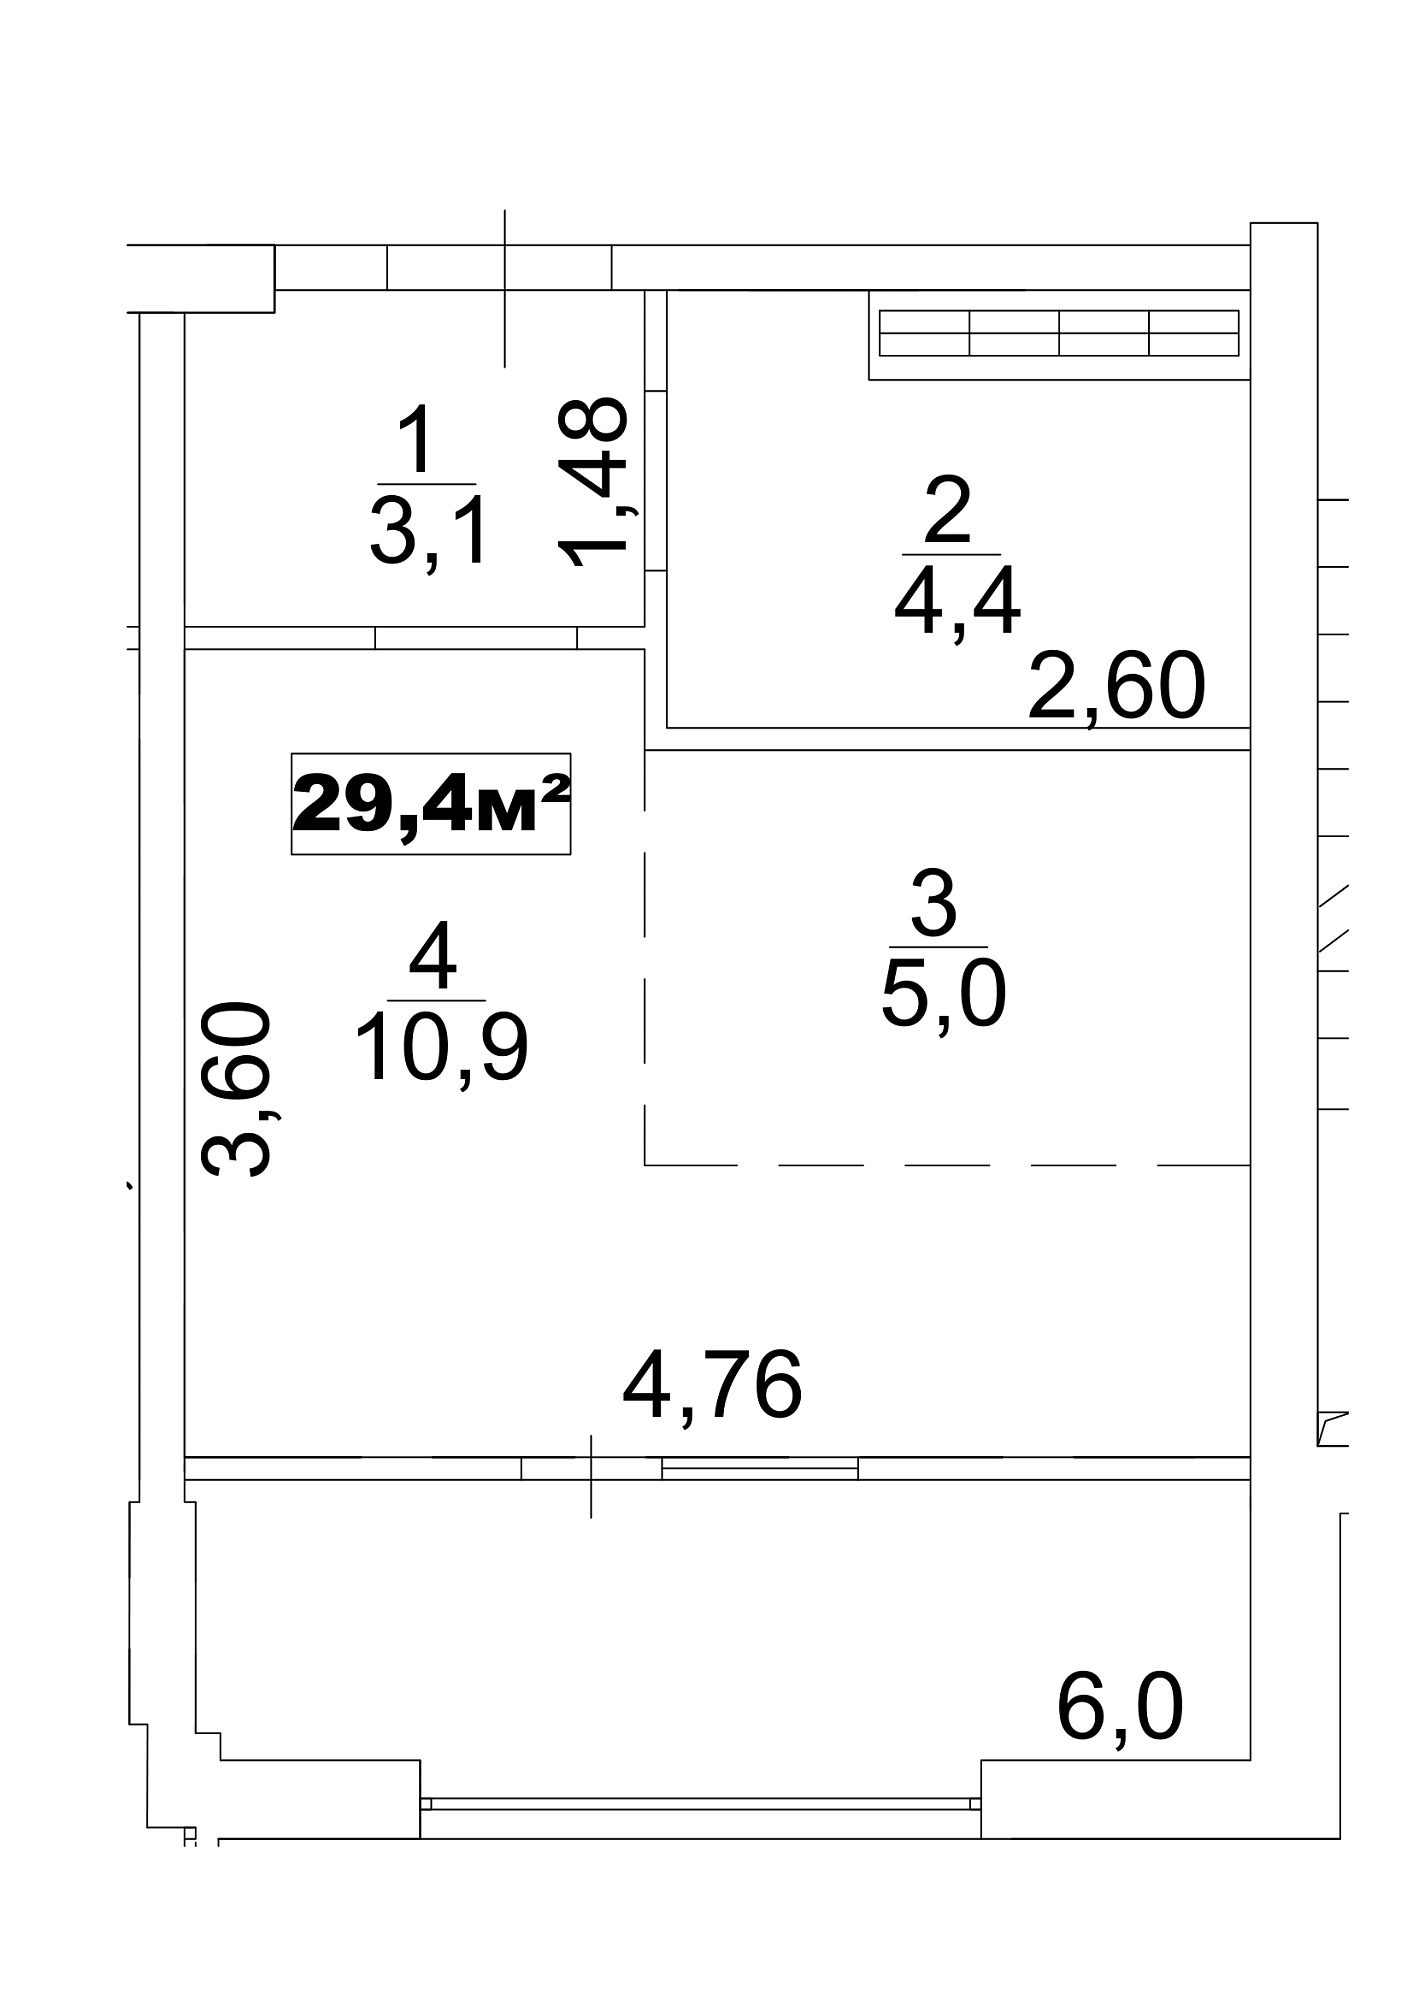 Планування Smart-квартира площею 29.4м2, AB-13-09/0070а.